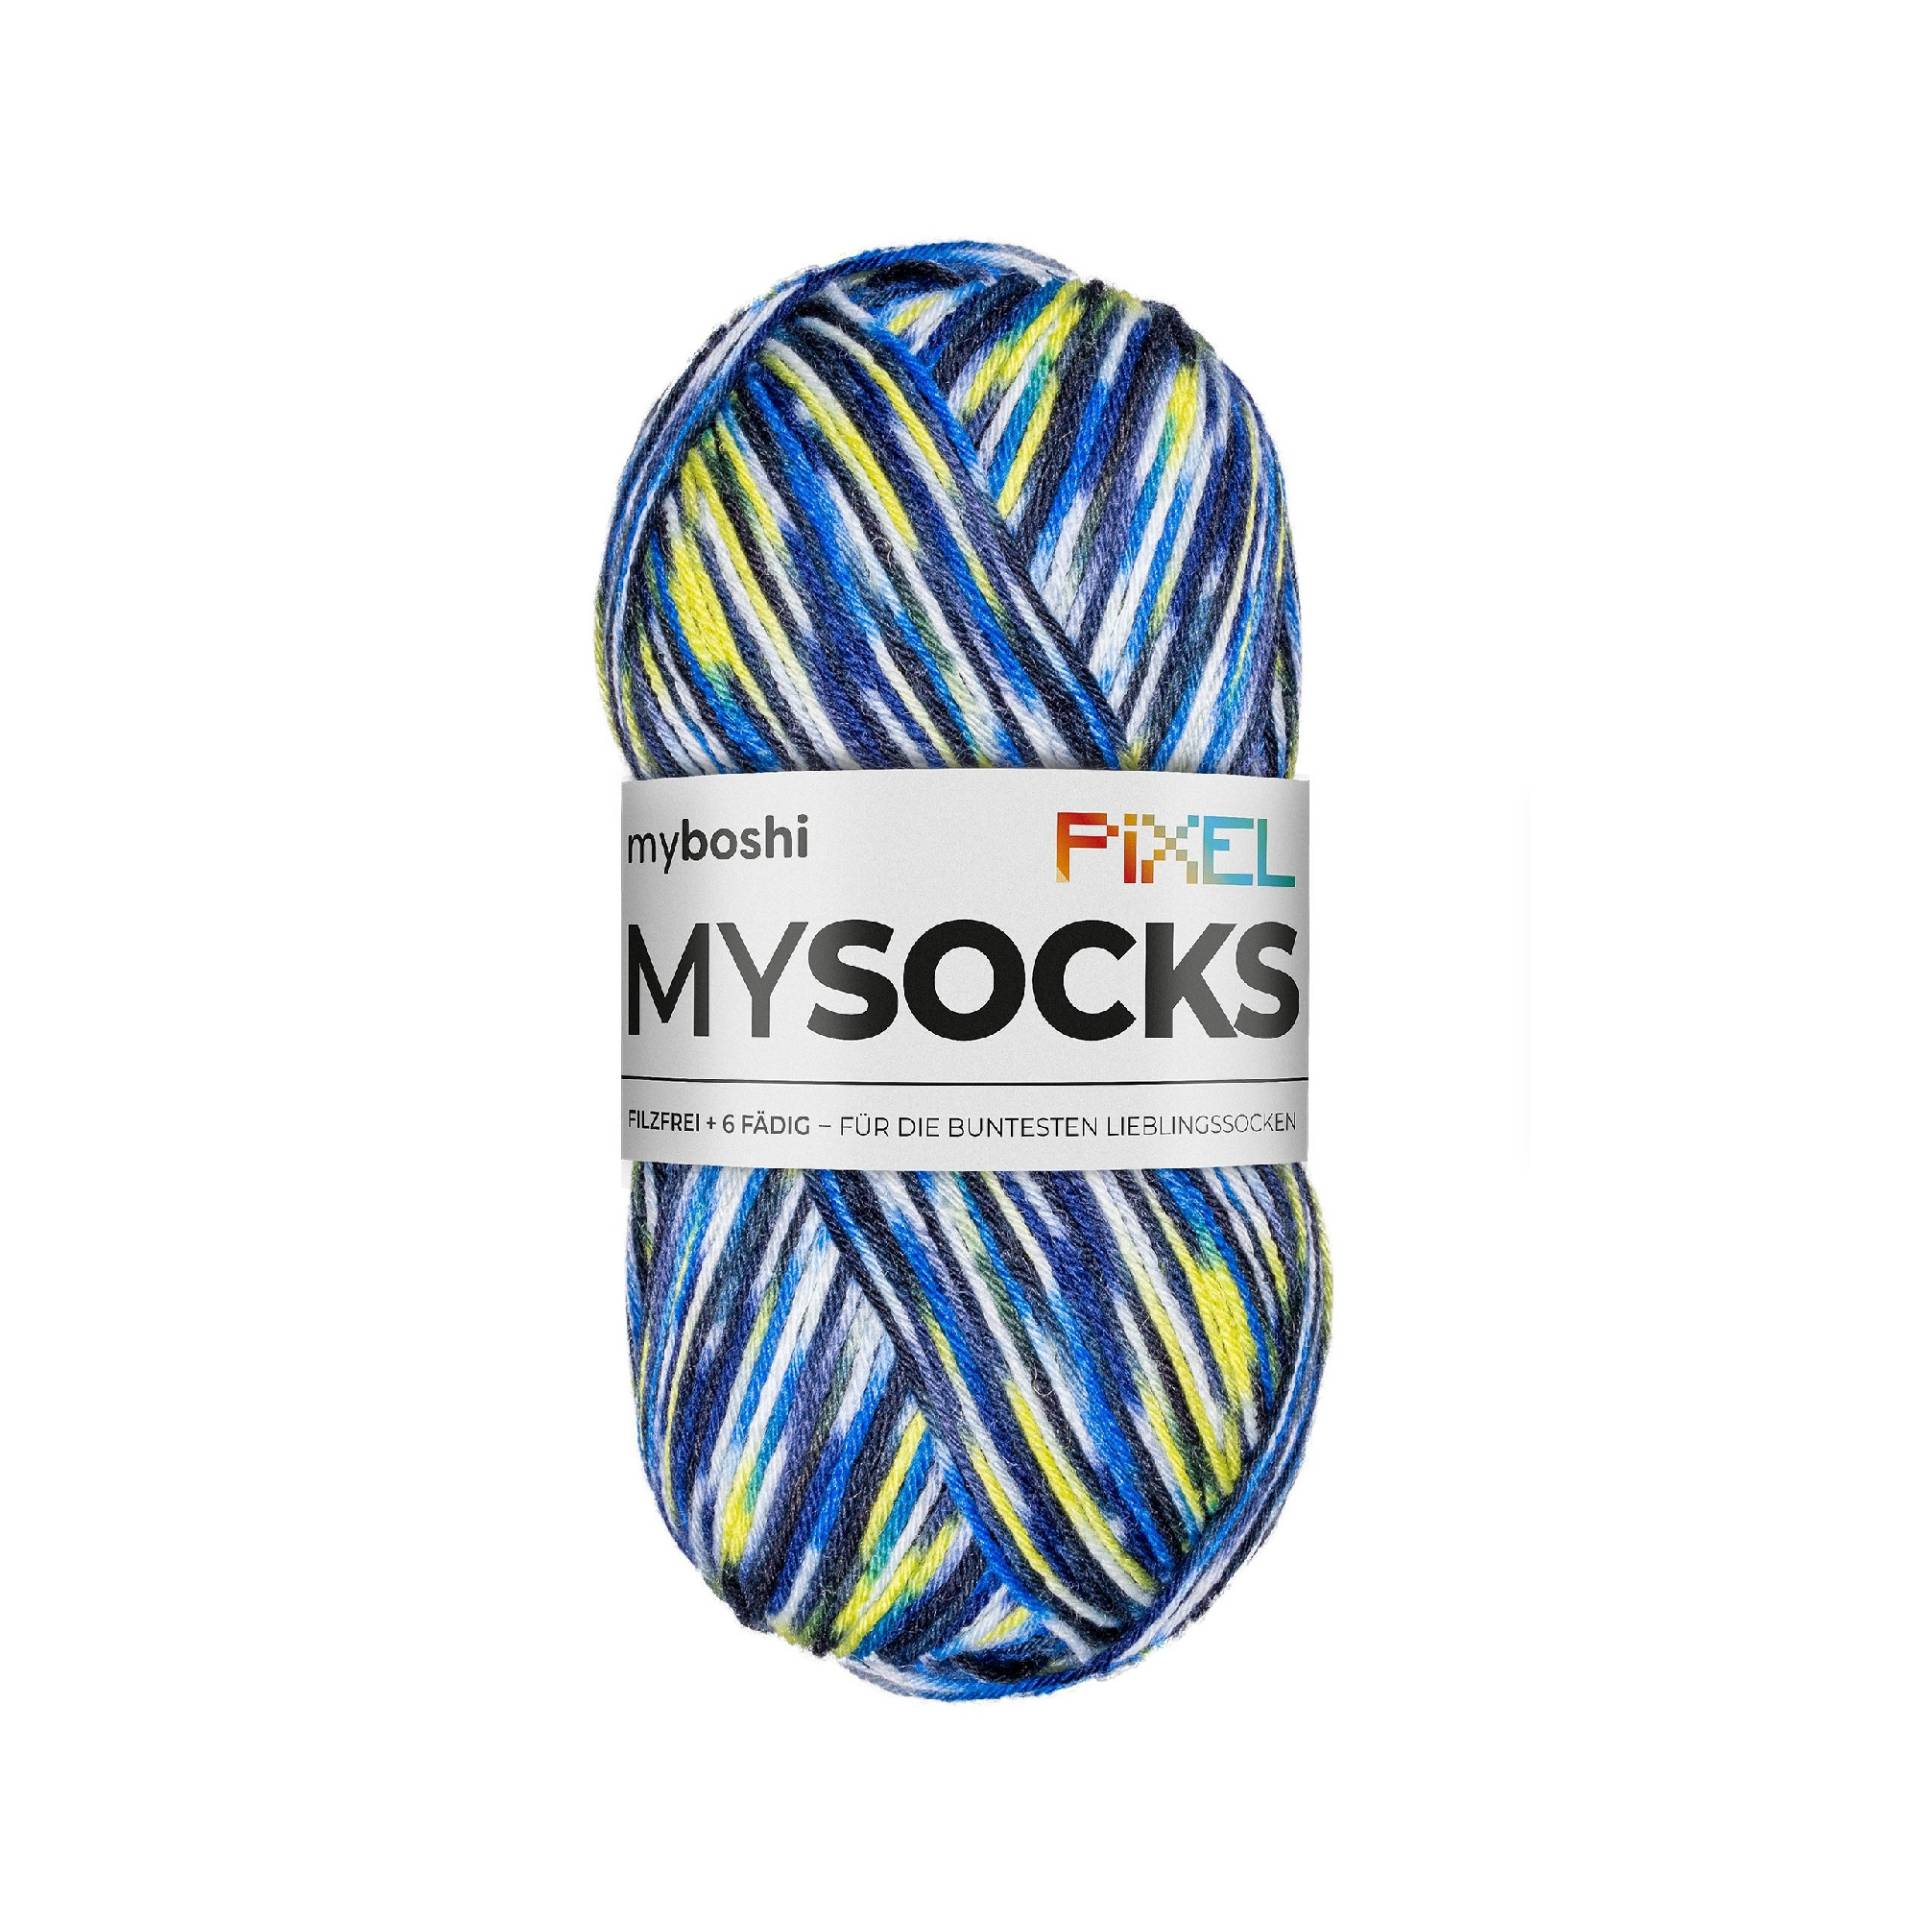 myboshi mysocks Pixel 6-fädige Sockenwolle Otis 150g, blau-gelb von Stoffe Hemmers